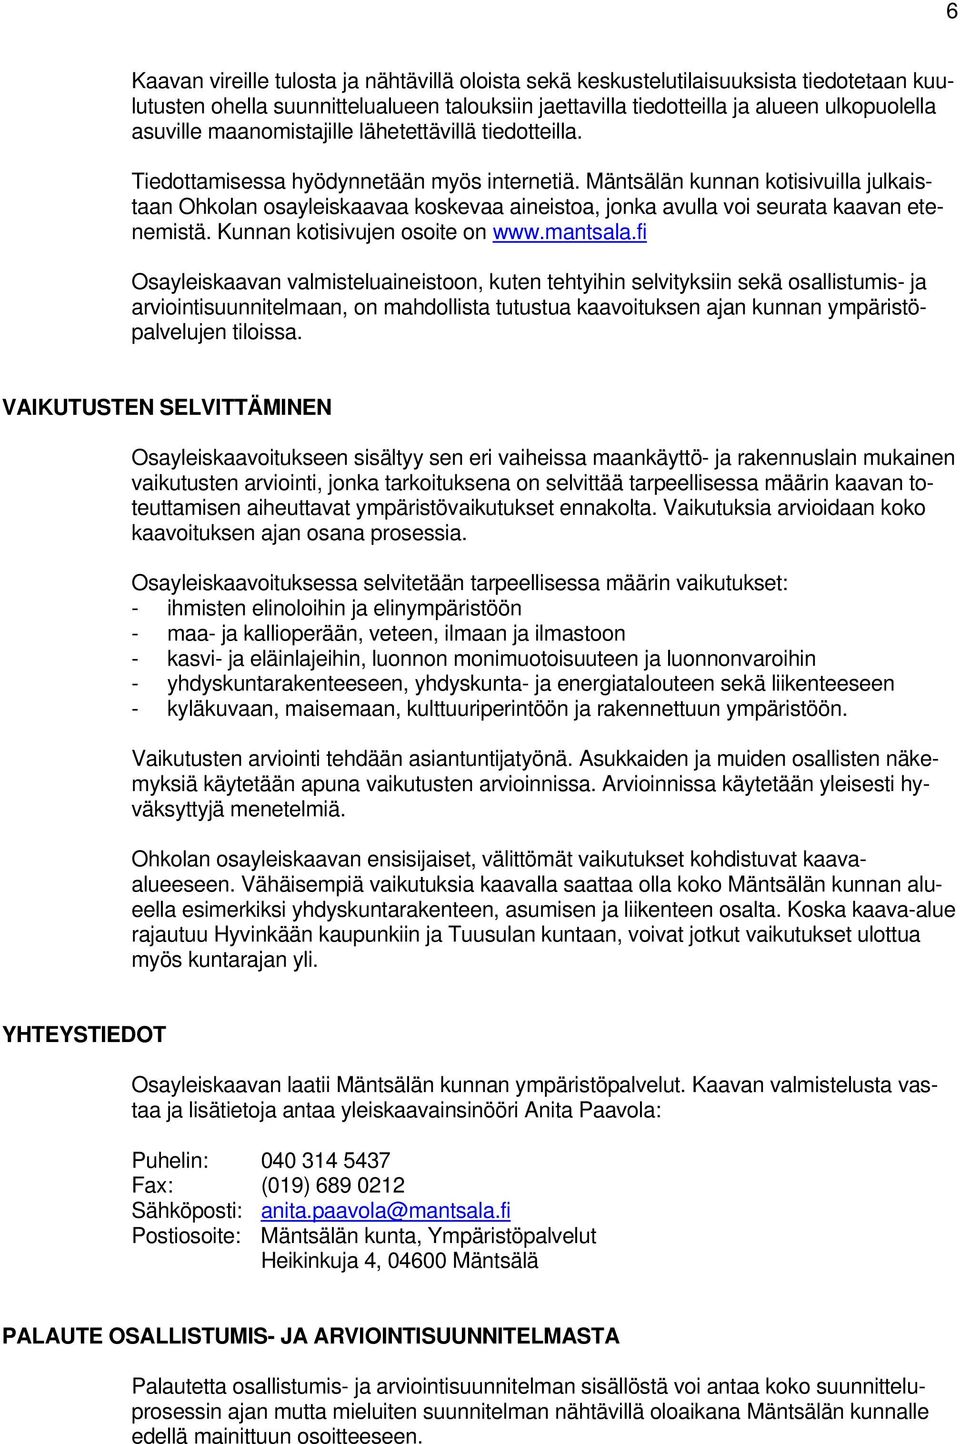 Mäntsälän kunnan kotisivuilla julkaistaan Ohkolan osayleiskaavaa koskevaa aineistoa, jonka avulla voi seurata kaavan etenemistä. Kunnan kotisivujen osoite on www.mantsala.